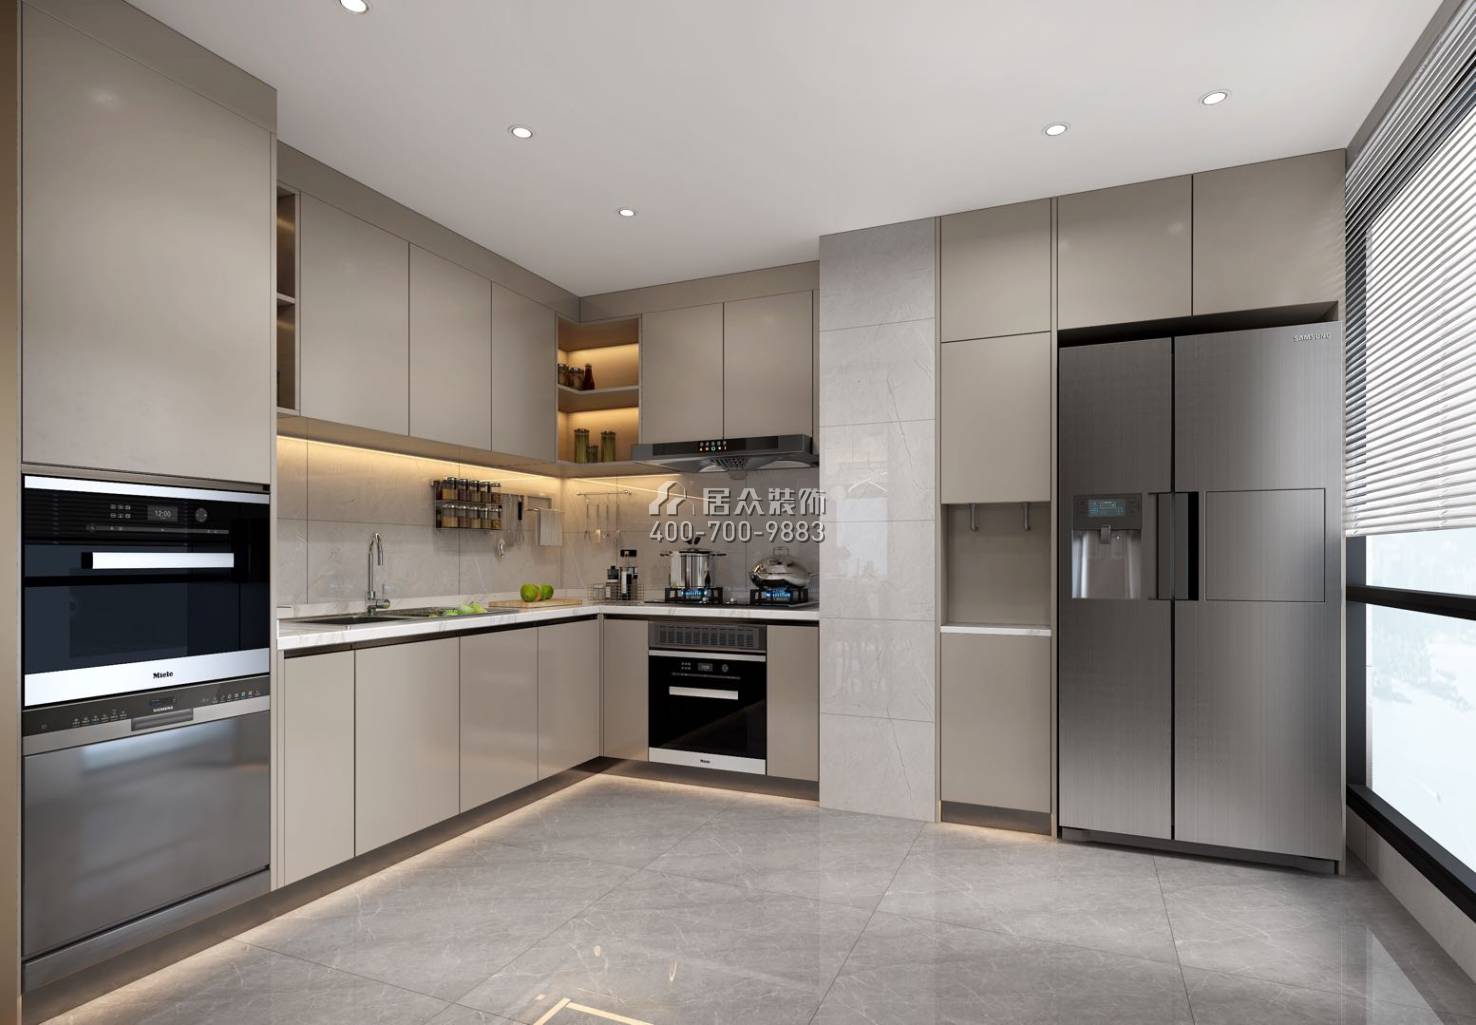 京基·御景峯130平方米现代简约风格平层户型厨房装修效果图